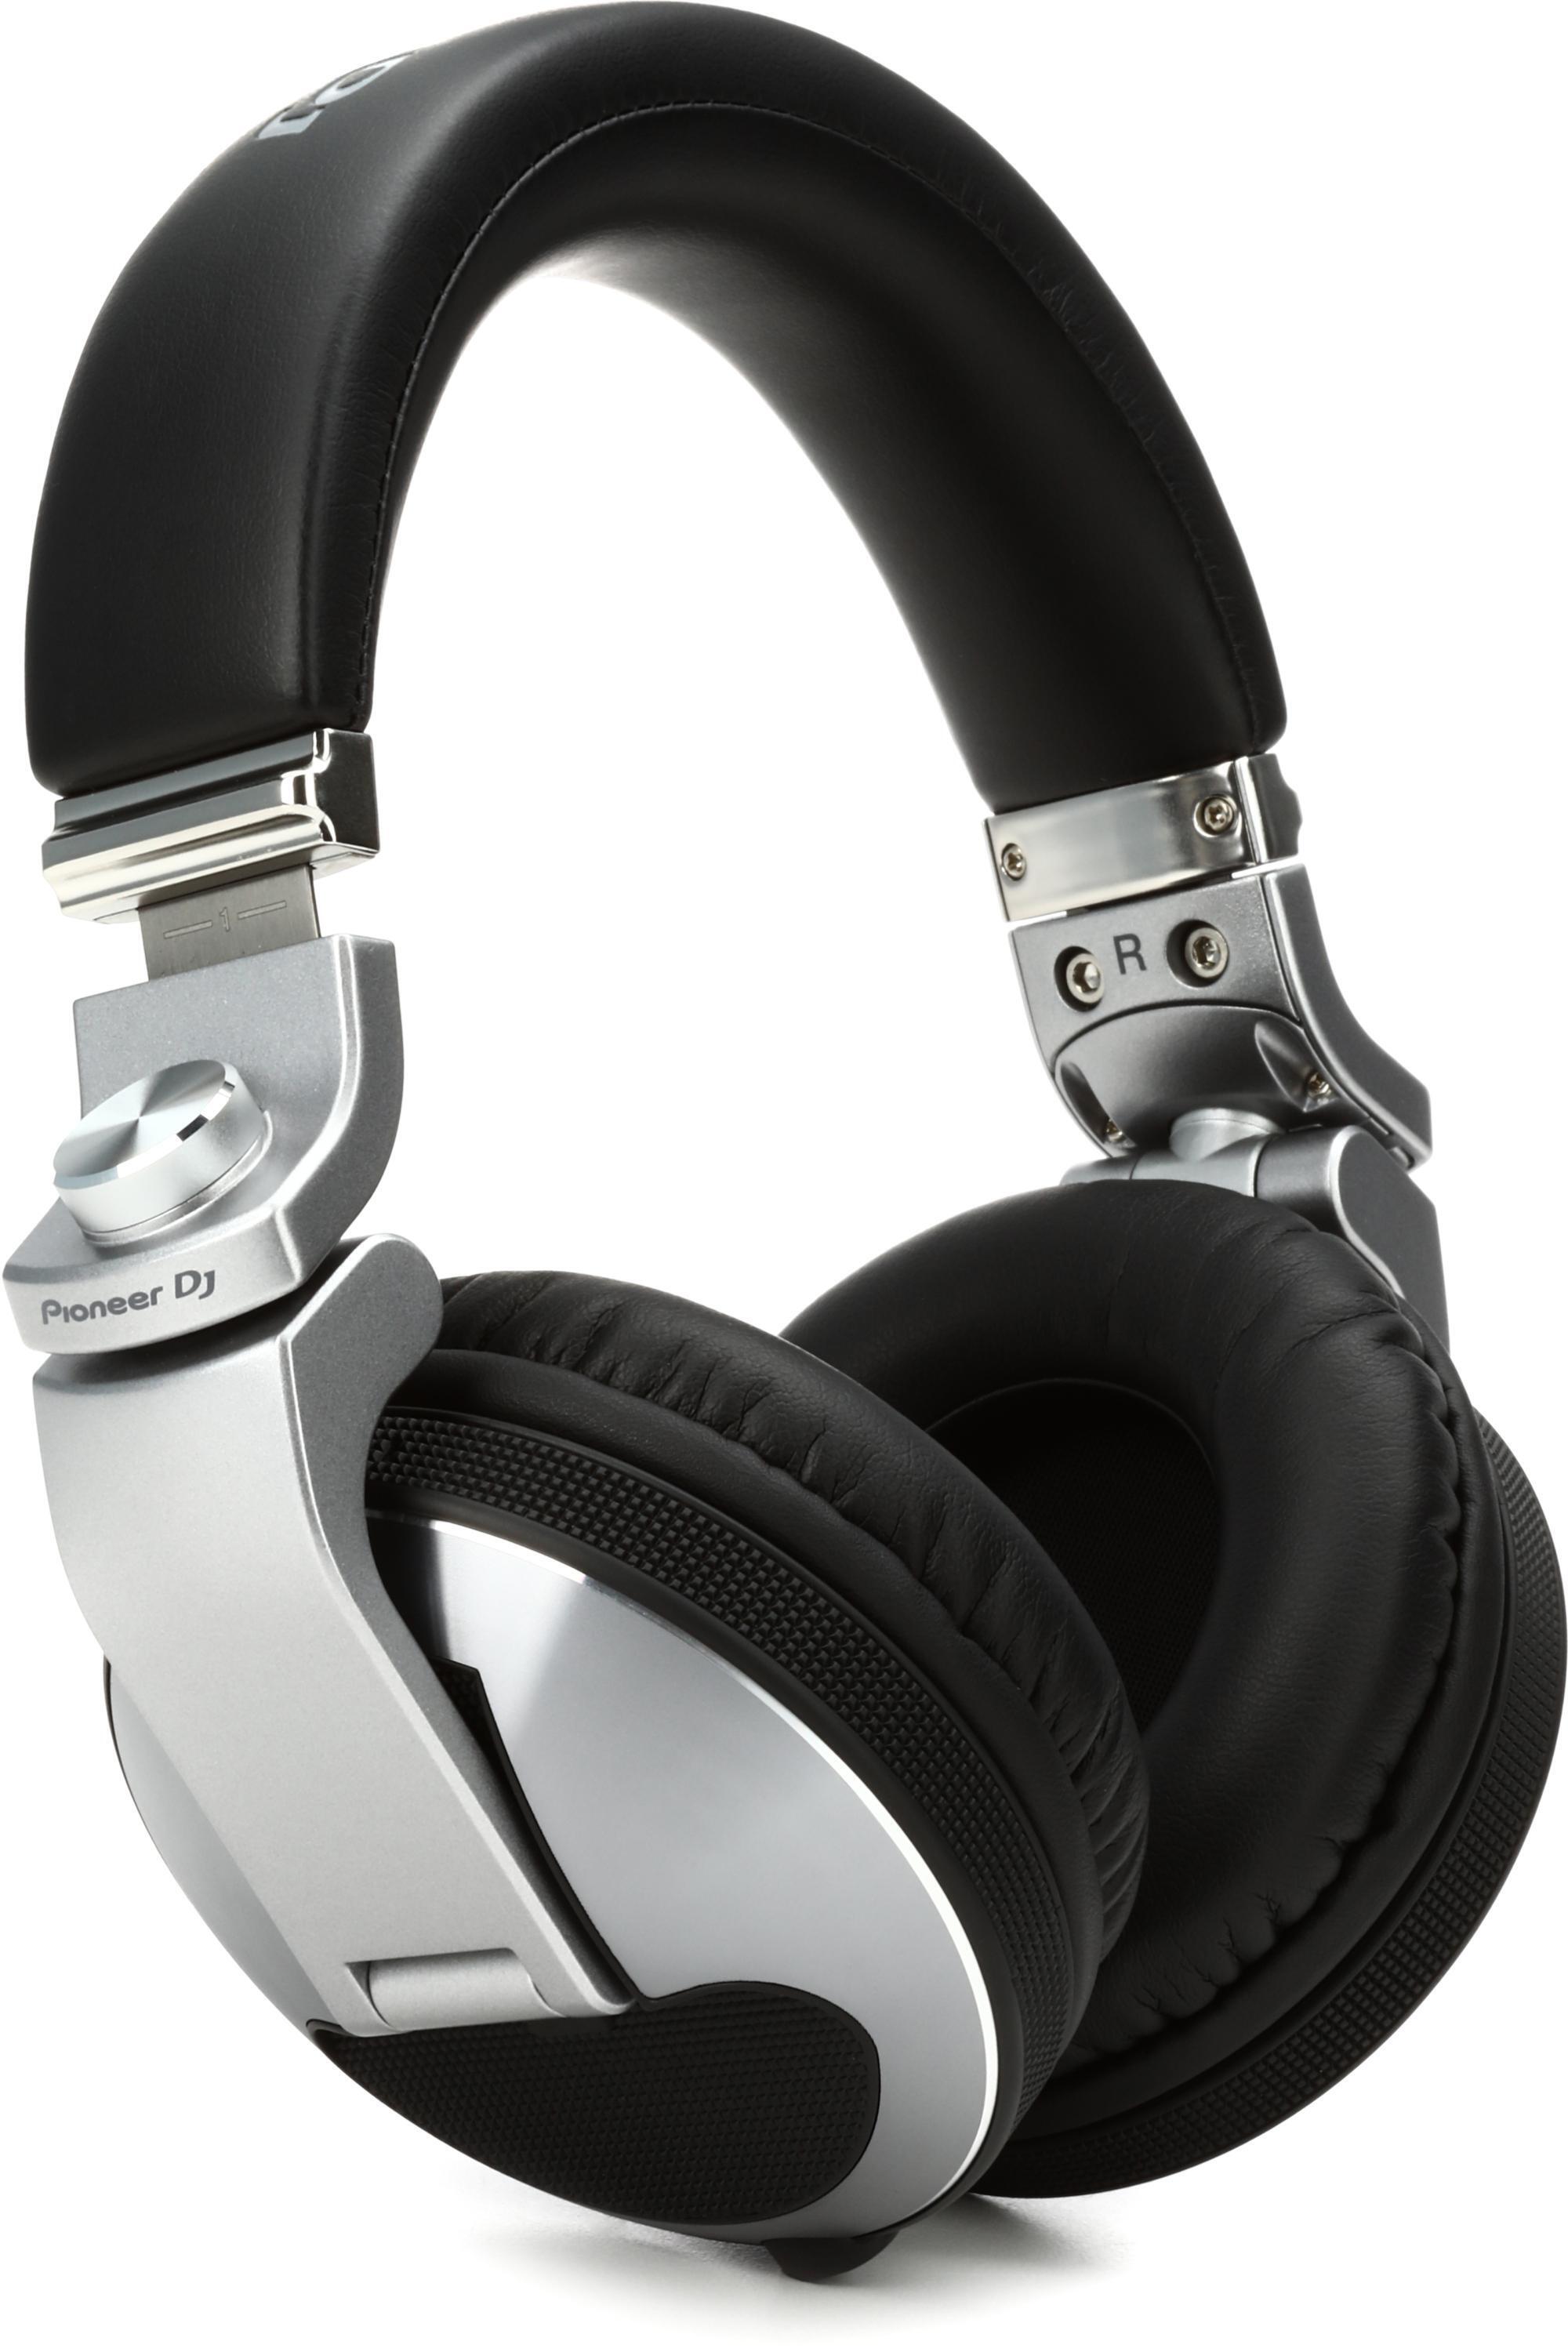 Pioneer DJ HDJ-X10 Professional DJ Headphones - Silver | Sweetwater